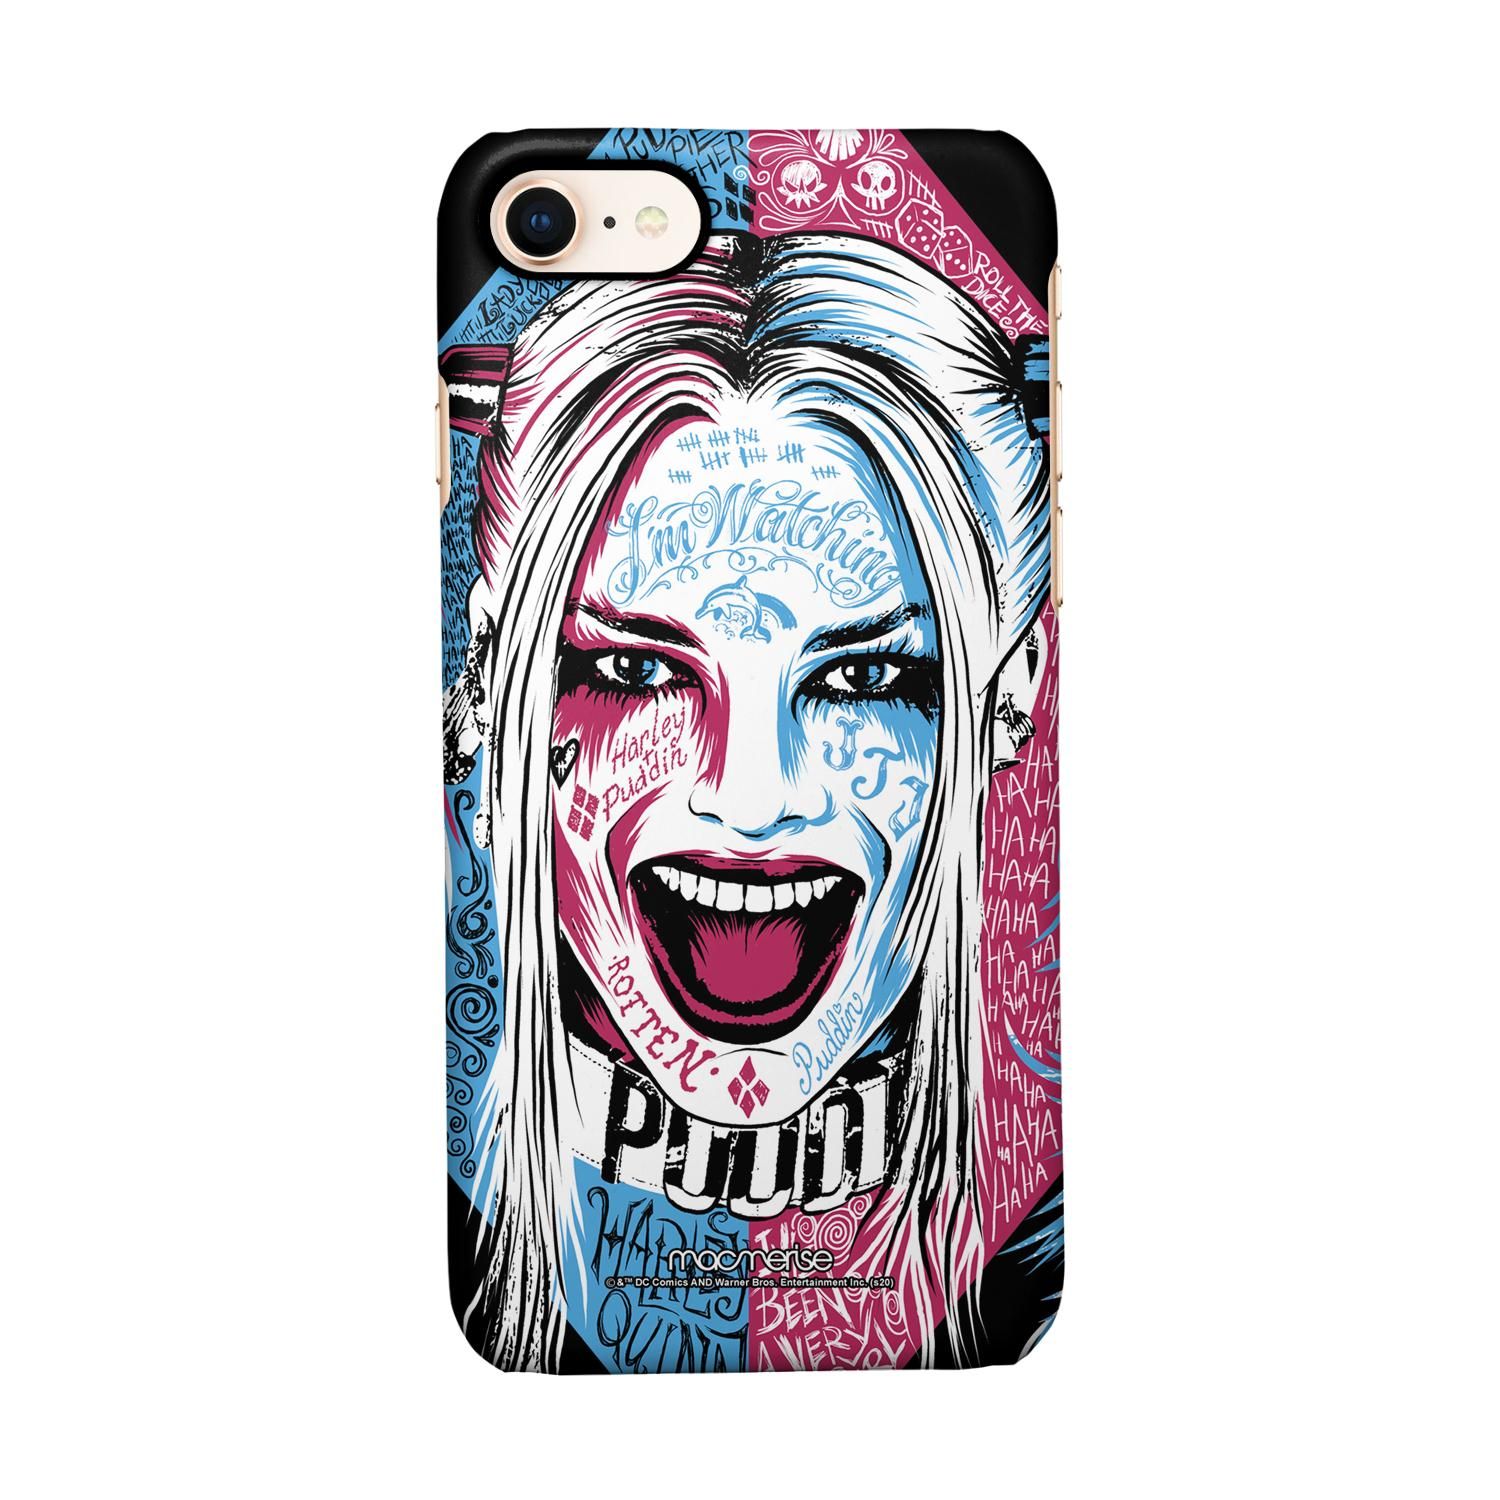 Buy Wicked Harley Quinn - Sleek Phone Case for iPhone 7 Online